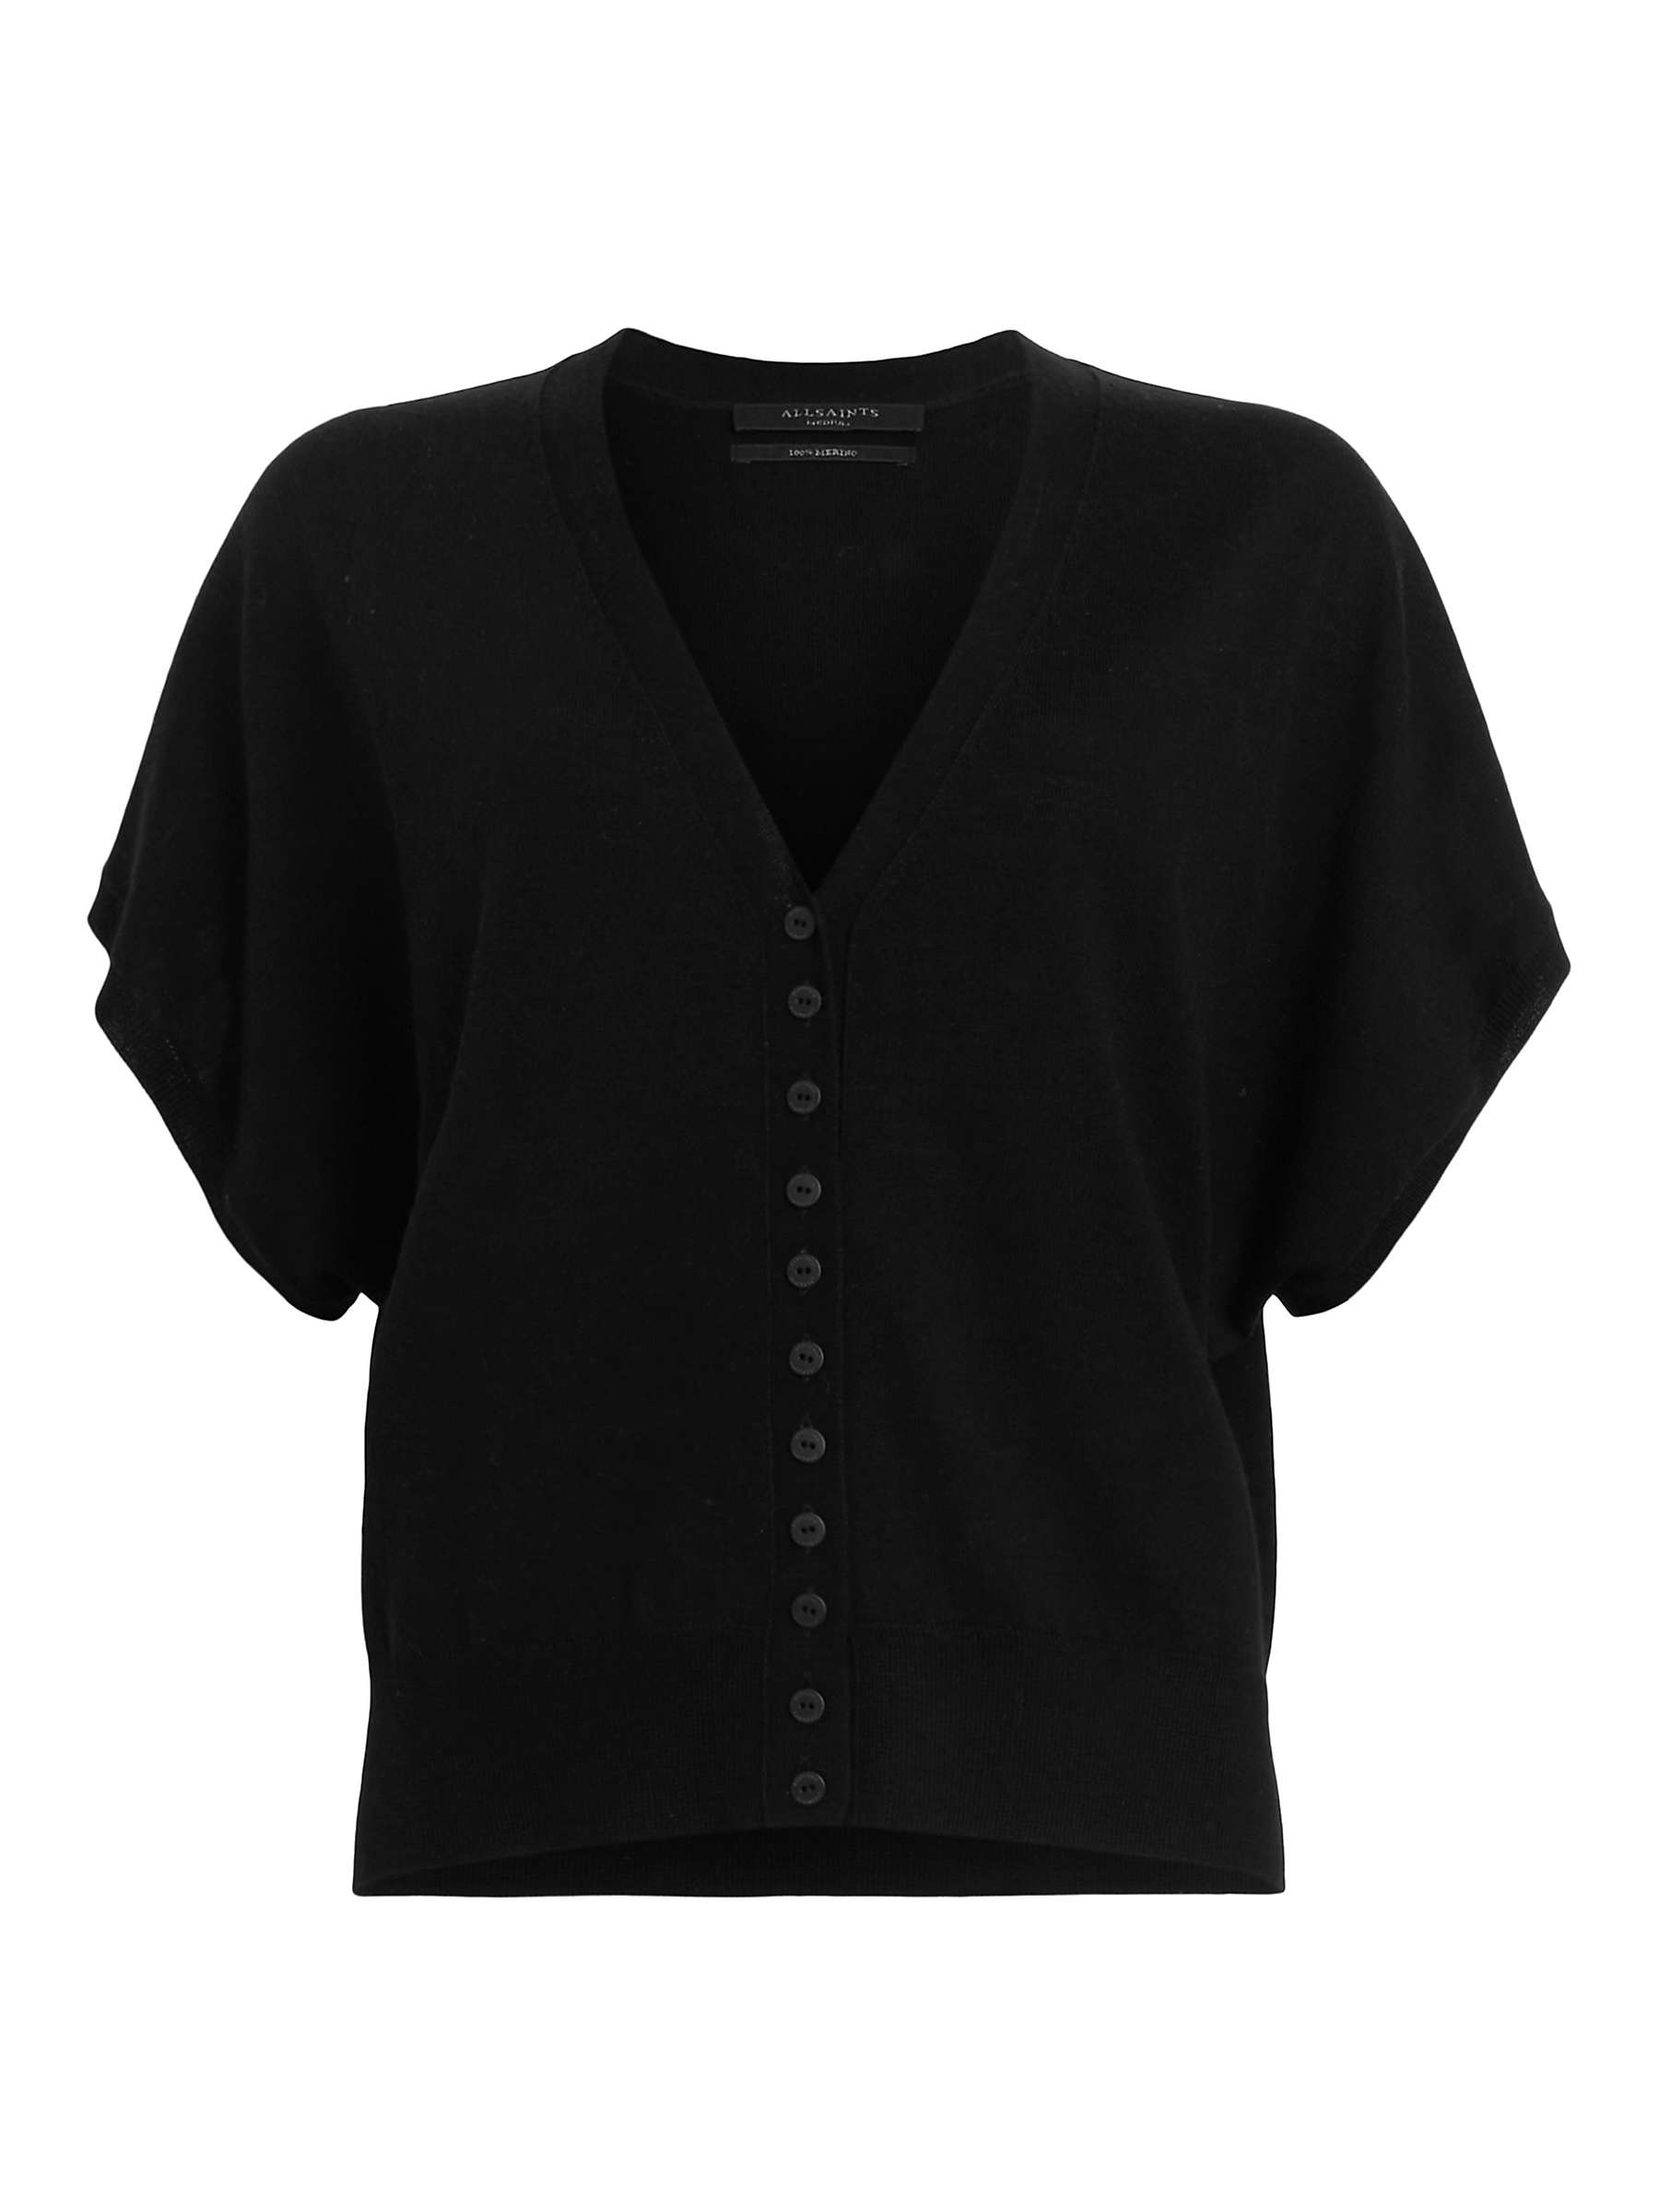 AllSaints Bronte Wool Short Sleeve Cardigan at John Lewis & Partners